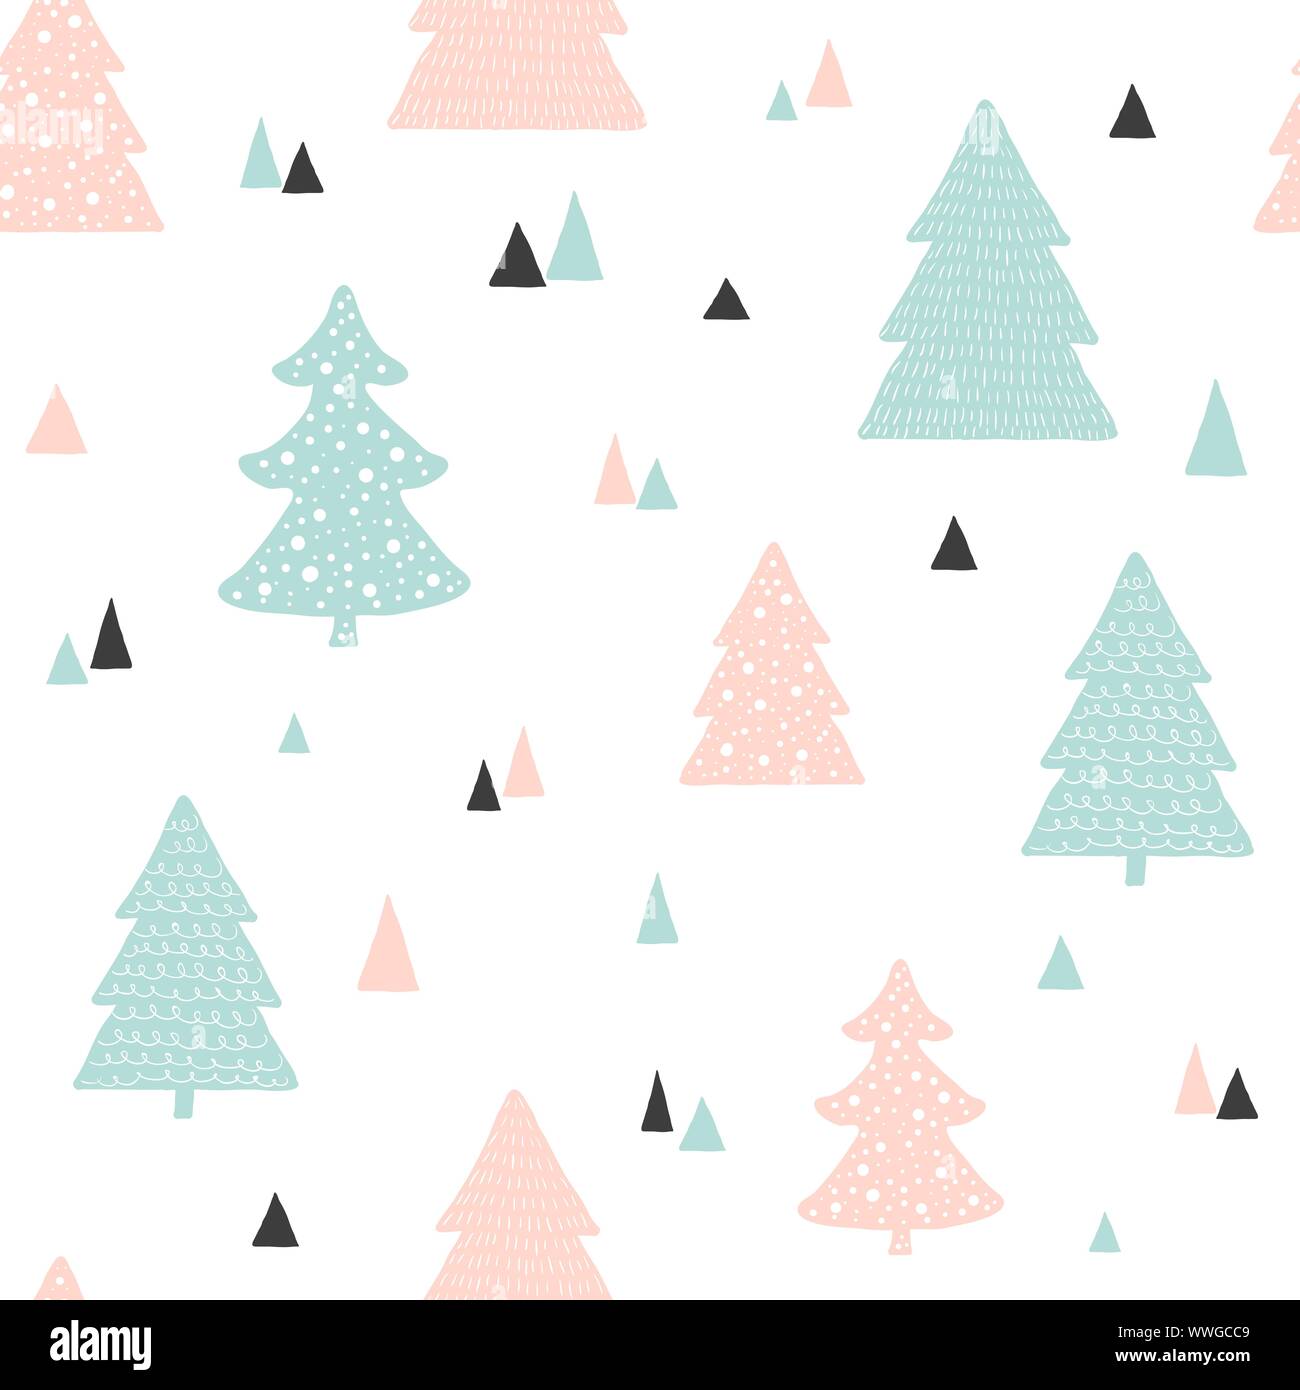 Motif de Noël scandinave. Vector background enfantin dessiné à la main avec des arbres de Noël Illustration de Vecteur